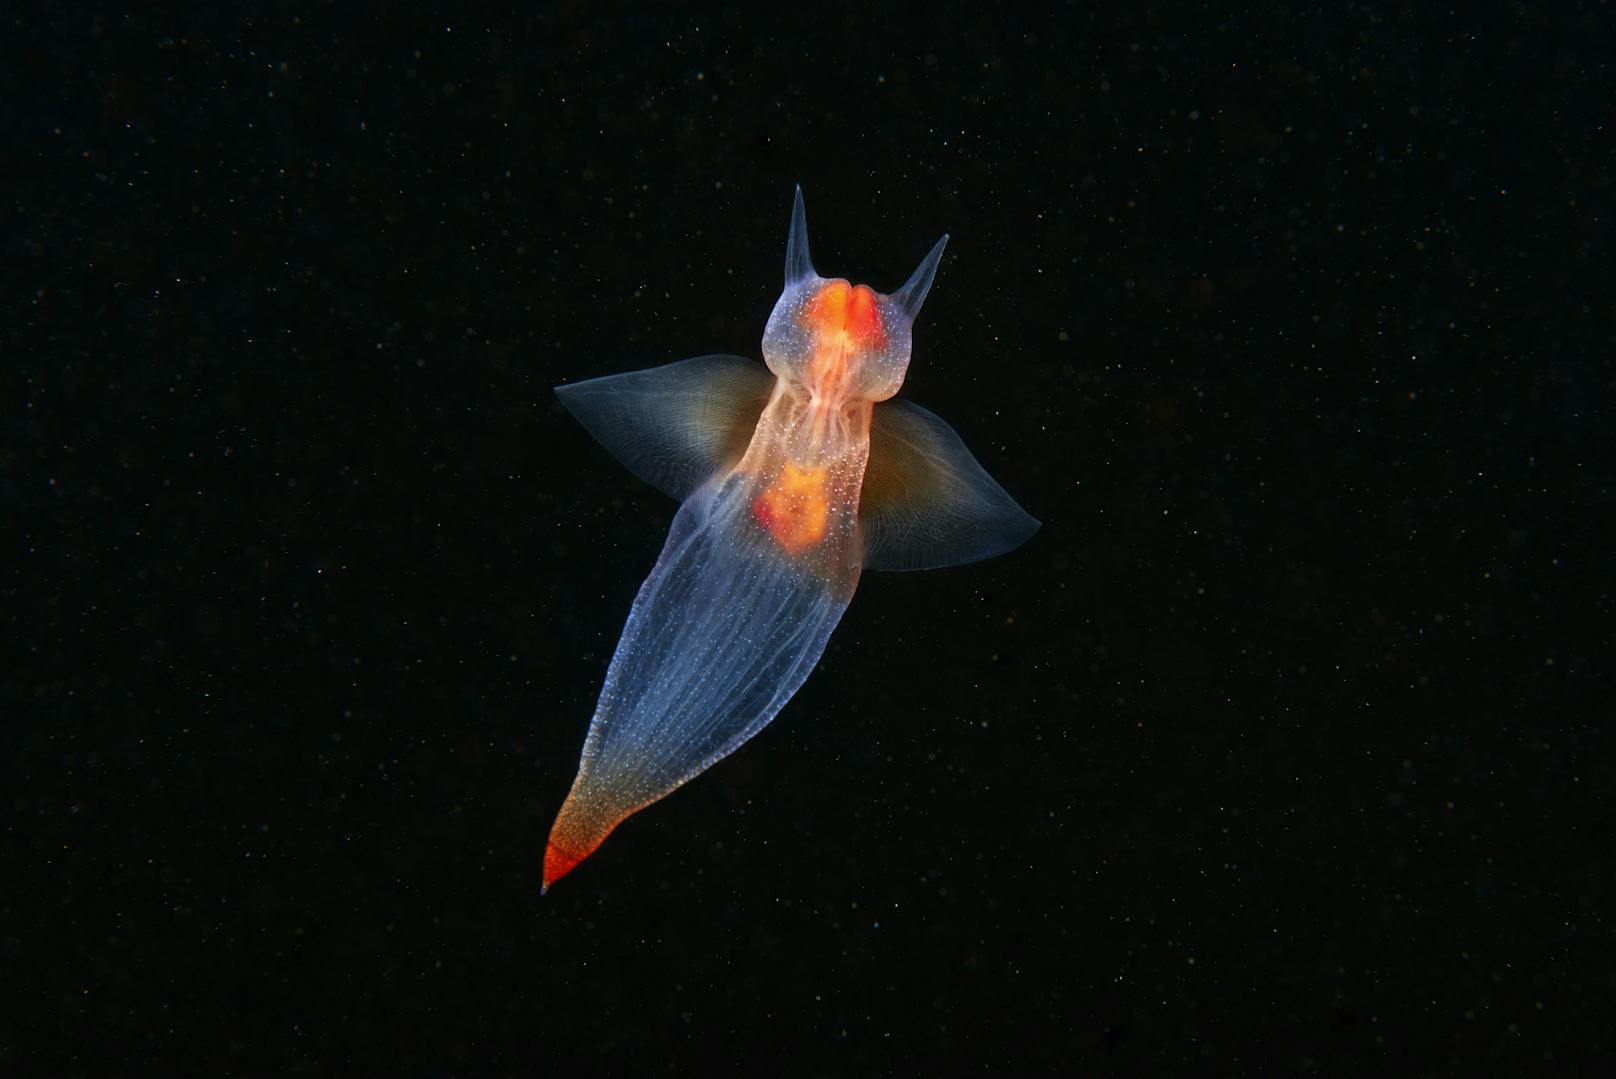 Eine Thecosomata, auch Seeschmetterling oder Flügelschmetterling genannt.&nbsp;Dieses leuchtende, faszinierende Tierchen lebt in kompletter Dunkelheit. Die "Thecosomata" ist eine kleine Meeresschnecke und wird ausgewachsen rund einen Zentimeter groß.